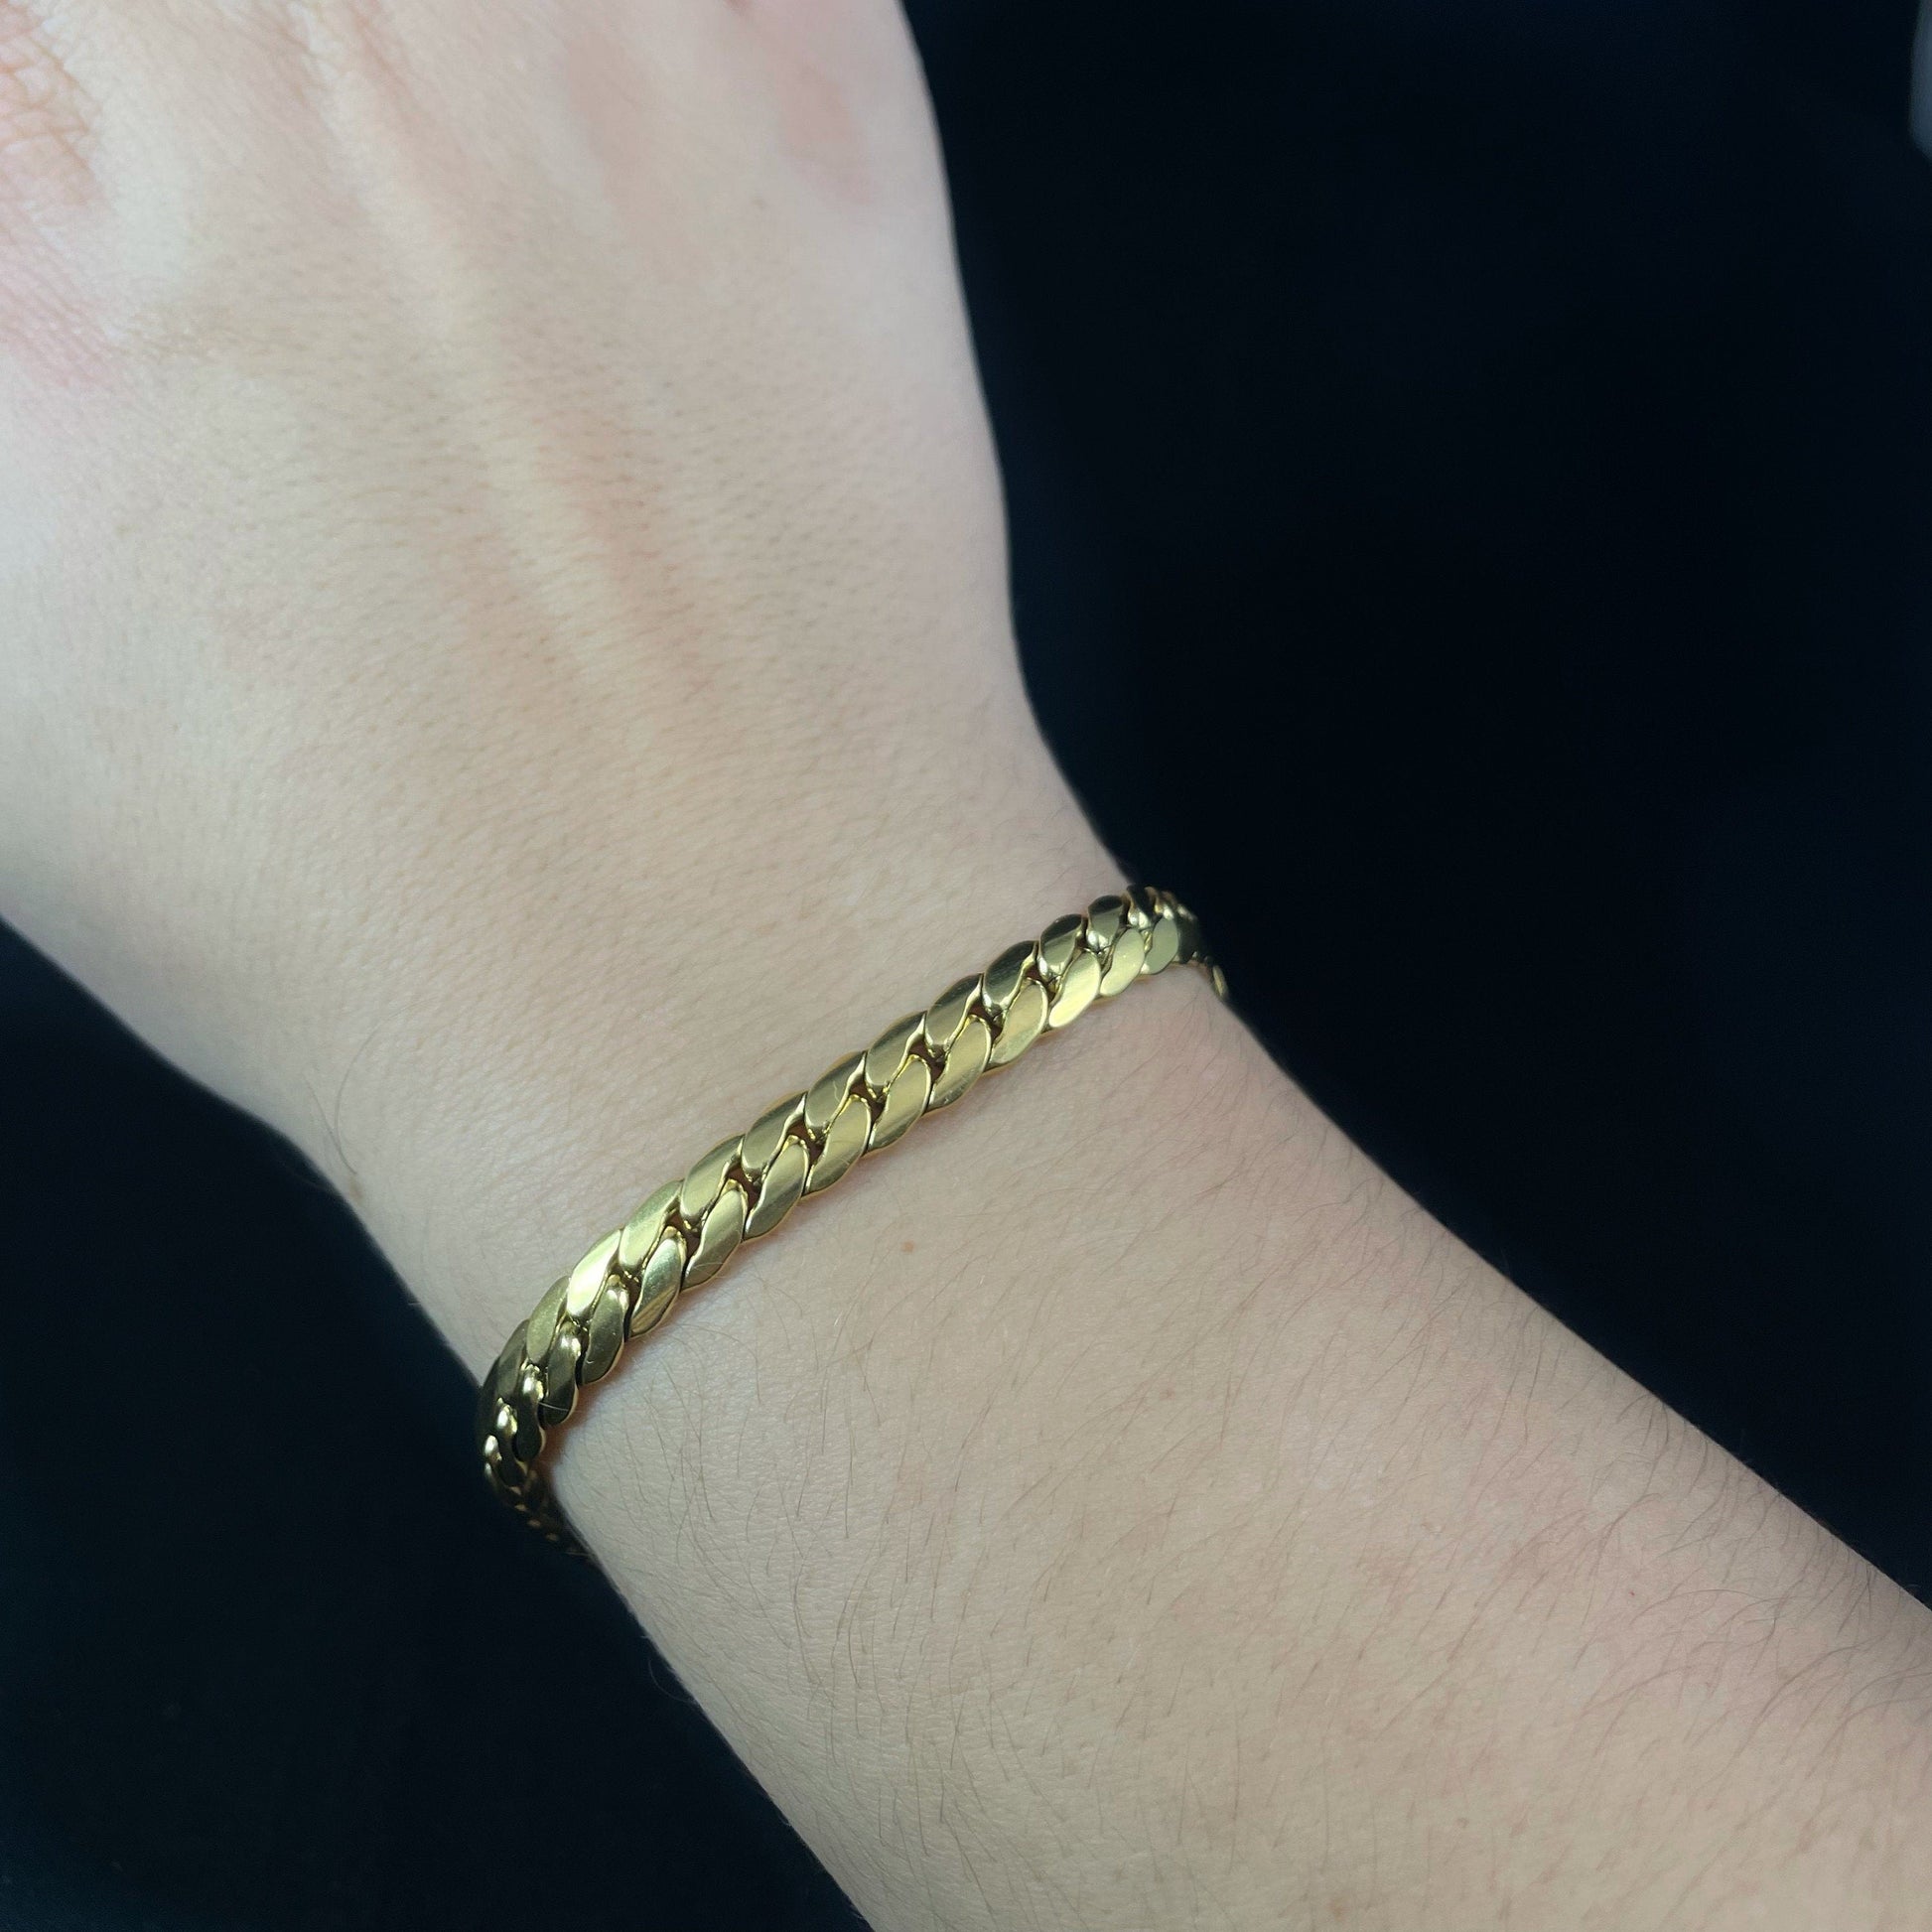 Gold Chain Link Bracelet - Handmade in Spain